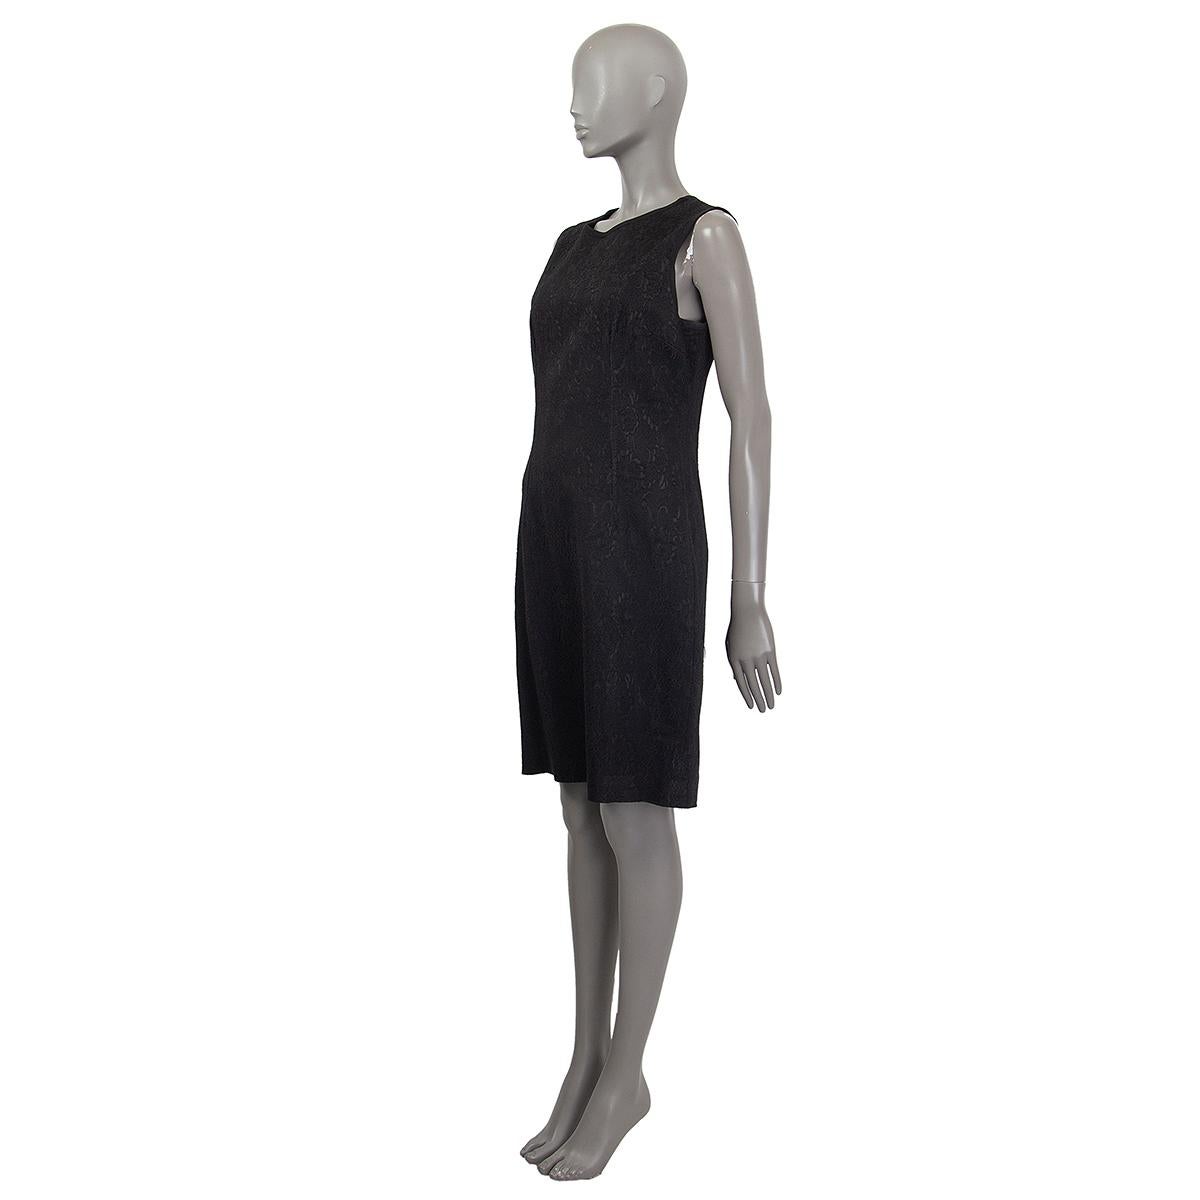 100% authentisches ärmelloses Jacquard-Kleid von Dolce & Gabbana aus schwarzem Acetat (78%), Nylon (18%) und Elastan (3%). Wird mit einem Reißverschluss auf der Rückseite geöffnet. Gefüttert mit Viskose (mit 5% Elasthan). Wurde getragen und ist in